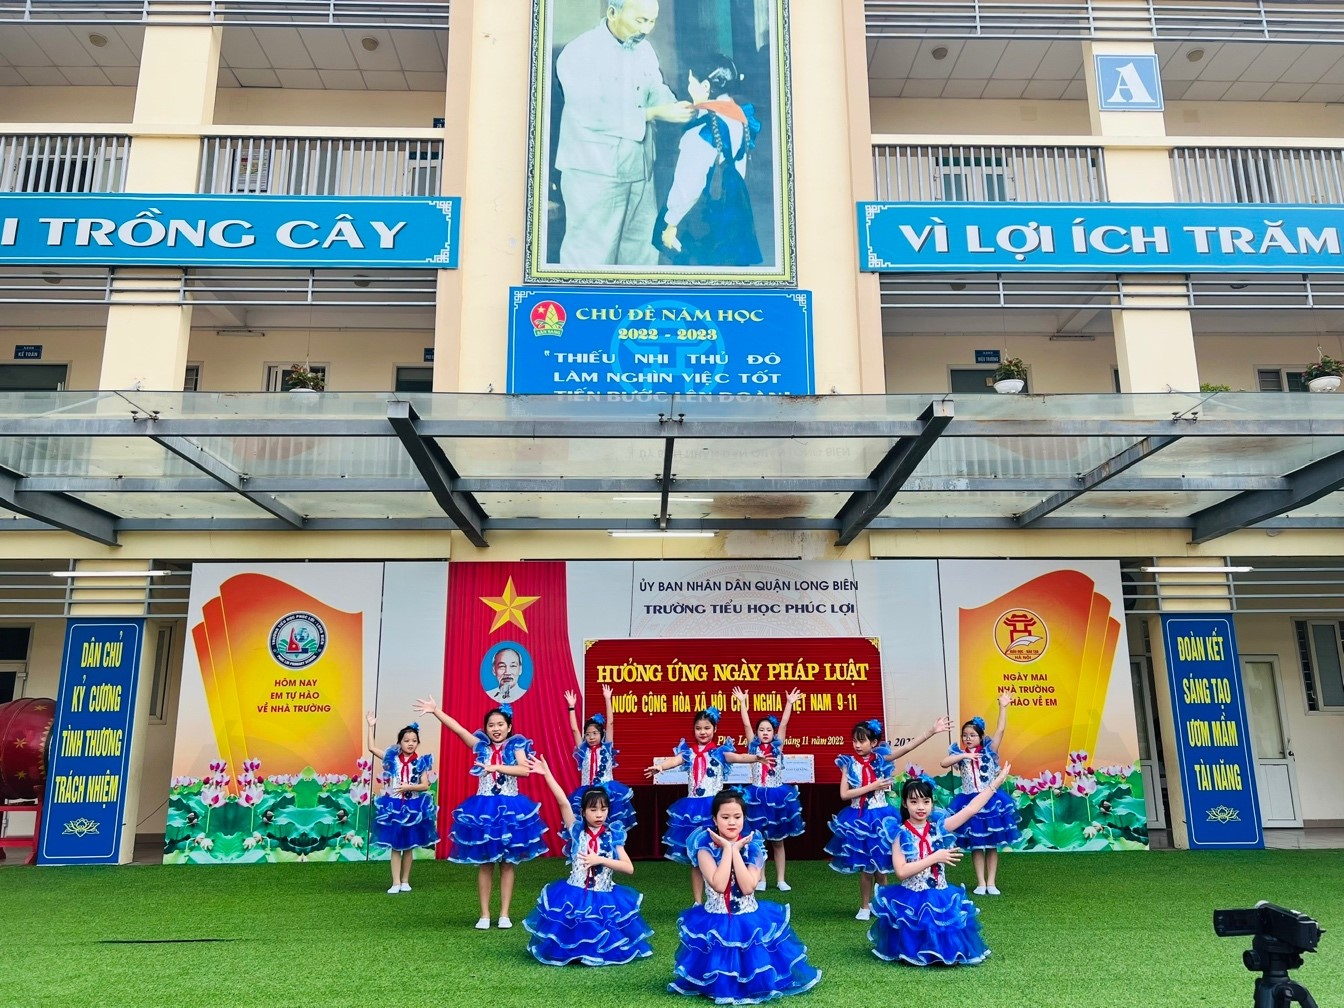 Trường tiểu học Phúc Lợi sinh hoạt dưới cờ Hưởng ứng Ngày pháp luật Nước Cộng hoà xã hội chủ nghĩa Việt Nam